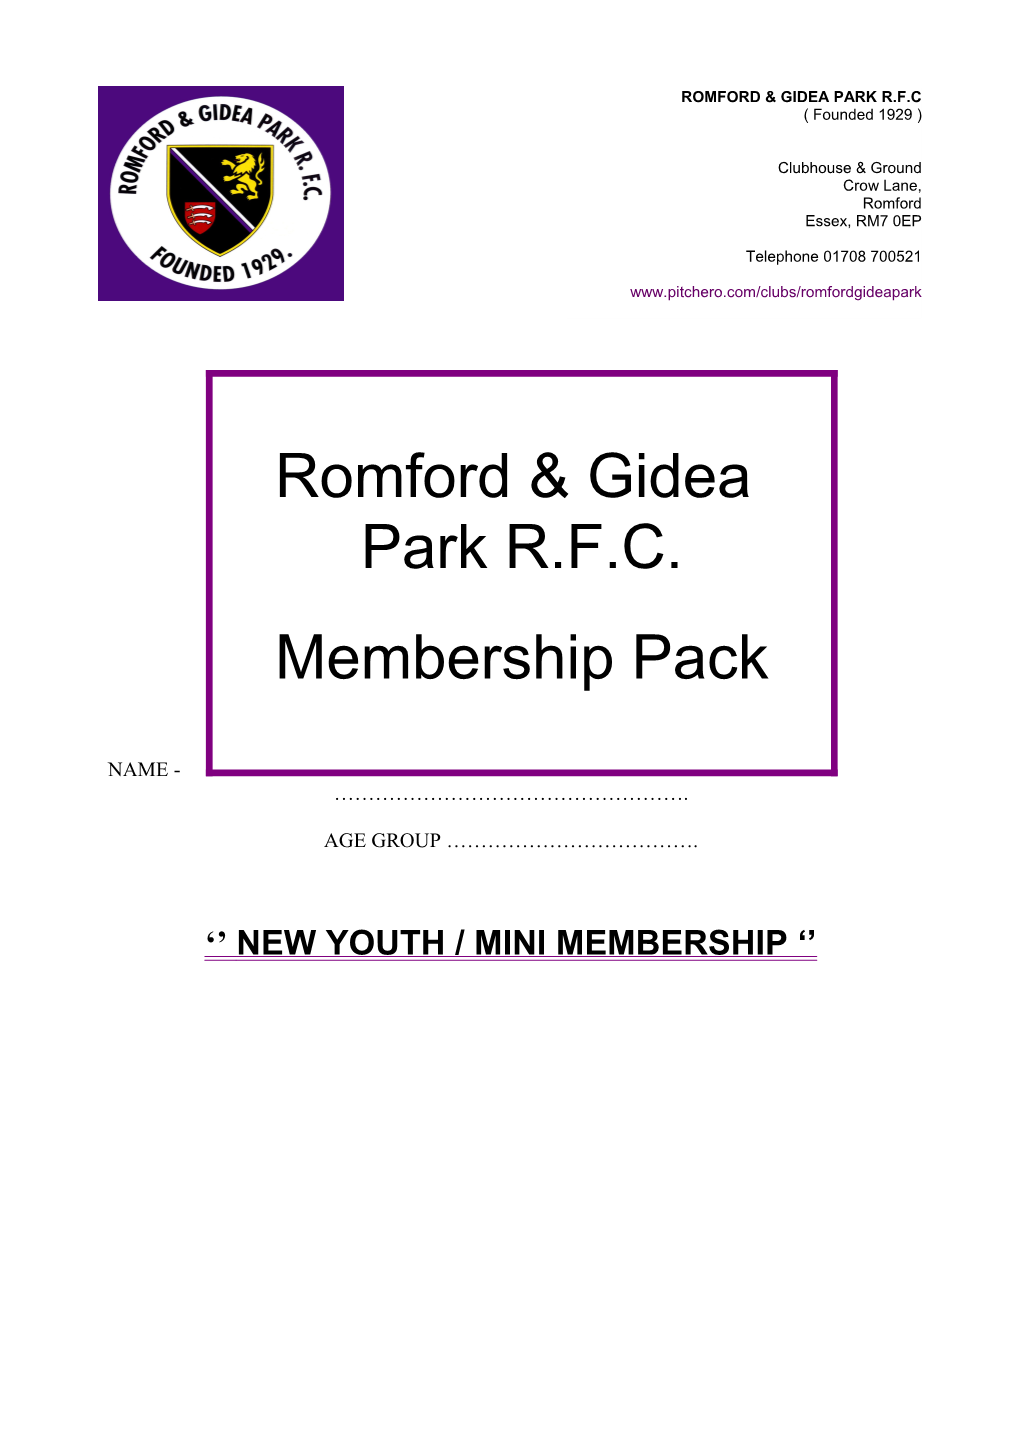 Romford & Gidea Park R